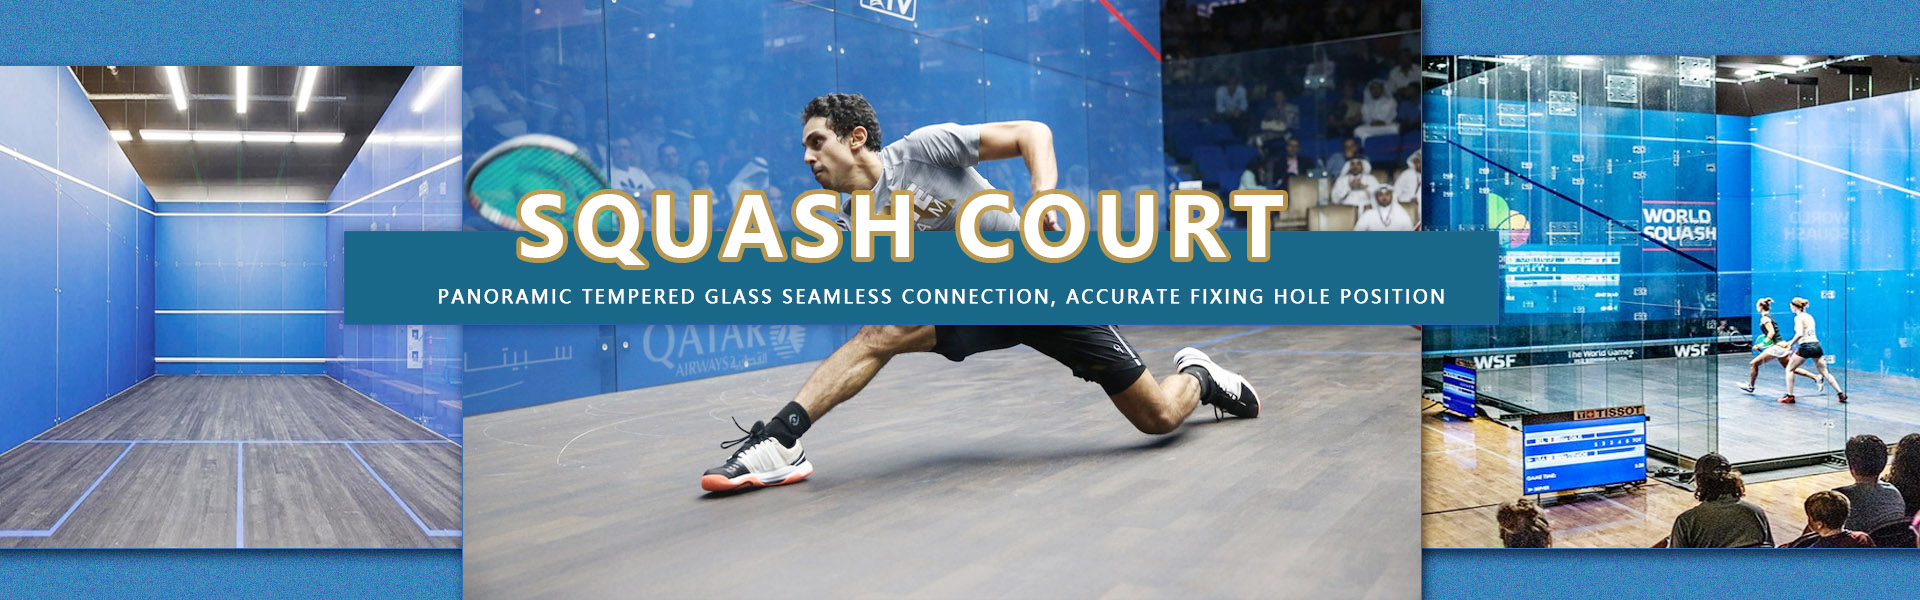 စကွပ်စင်တာအတွက် မှန်/သစ်သား နံရံအပြည့် Squash Court ဆောက်လုပ်ရေး အိတ်ဆောင် Squash Court ကြမ်းခင်း